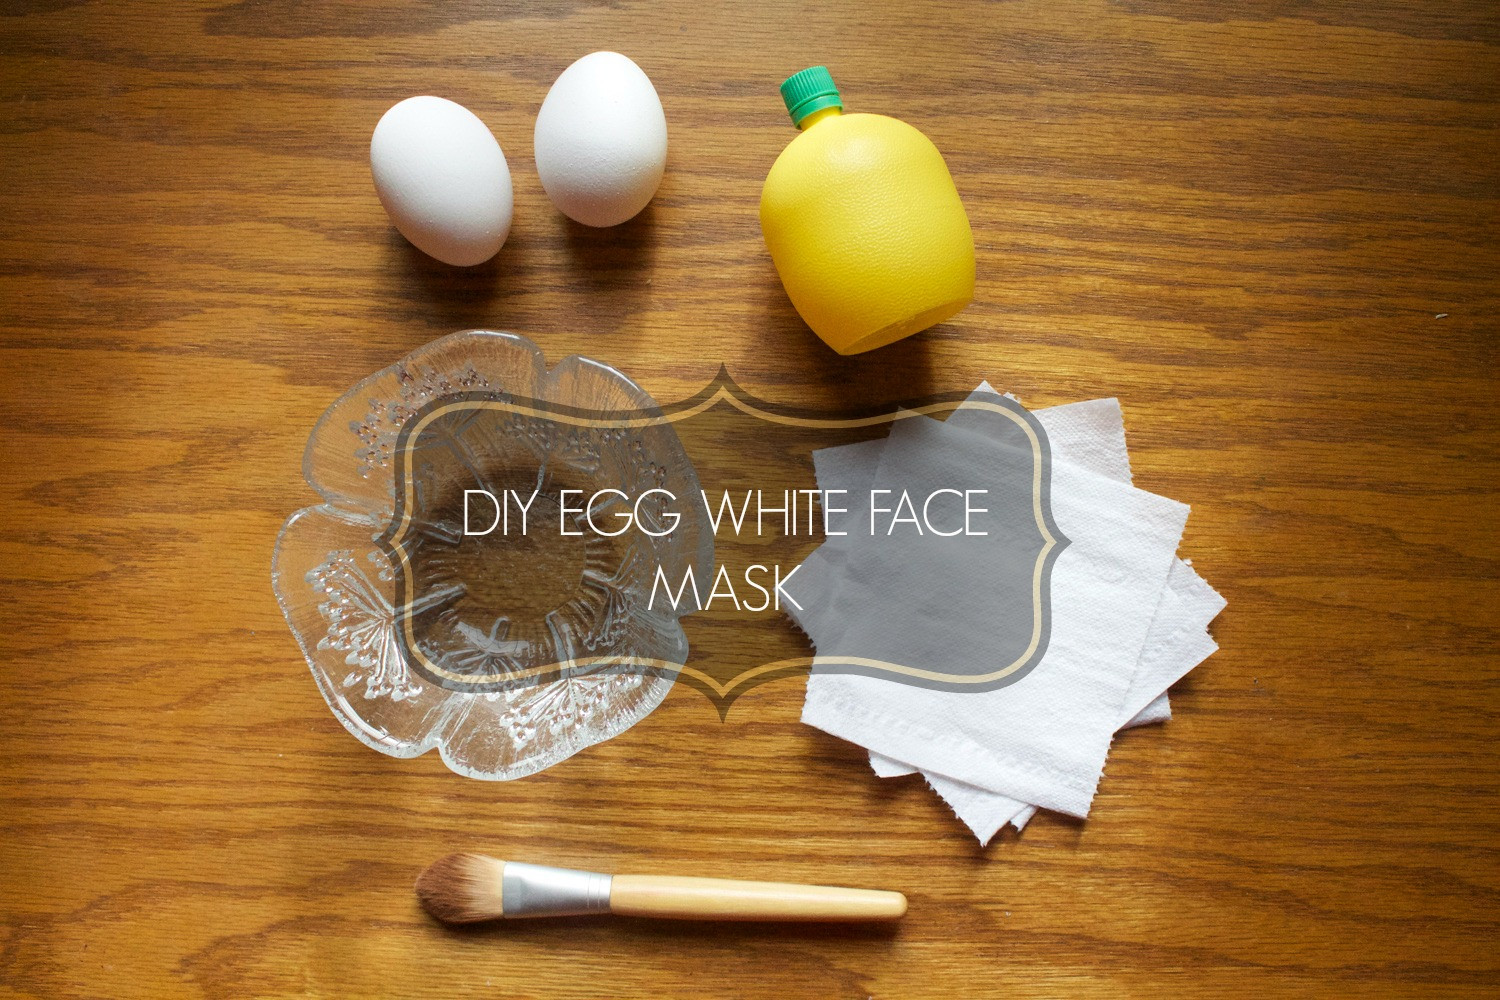 DIY Egg White Peel Off Mask
 DIY EGG WHITE FACE MASK